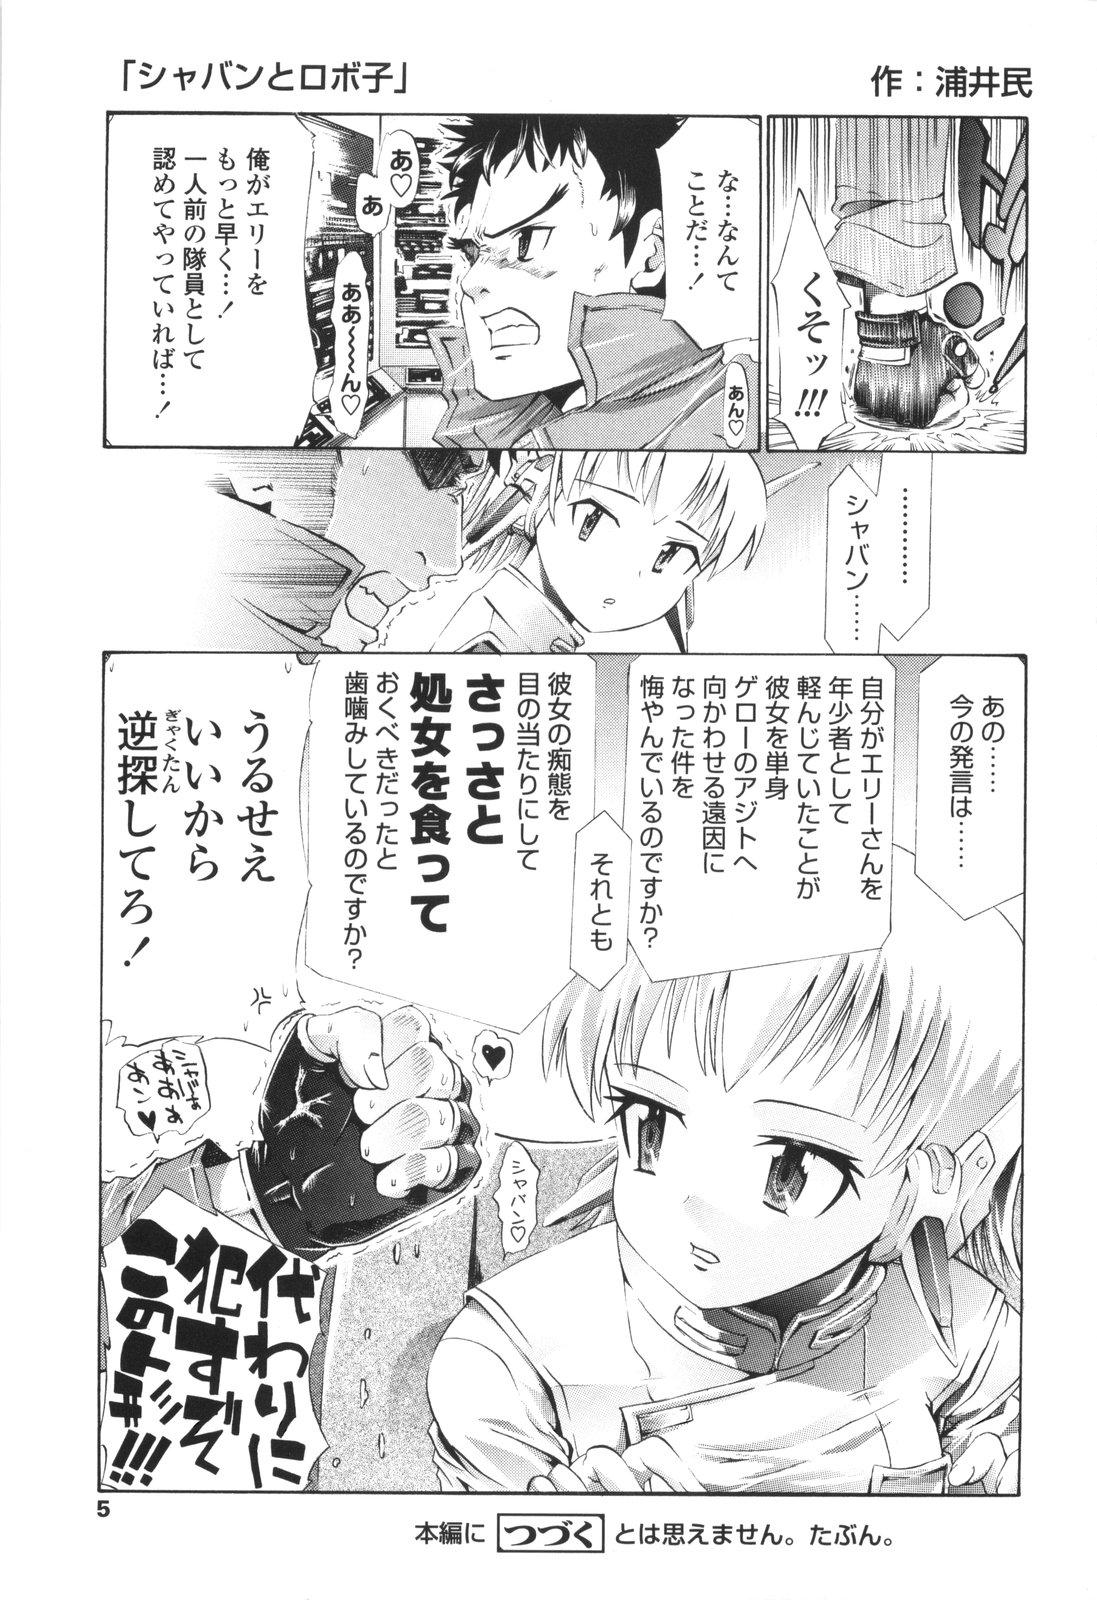 Suck Urayama no Himitsu Kichi Redhead - Page 6